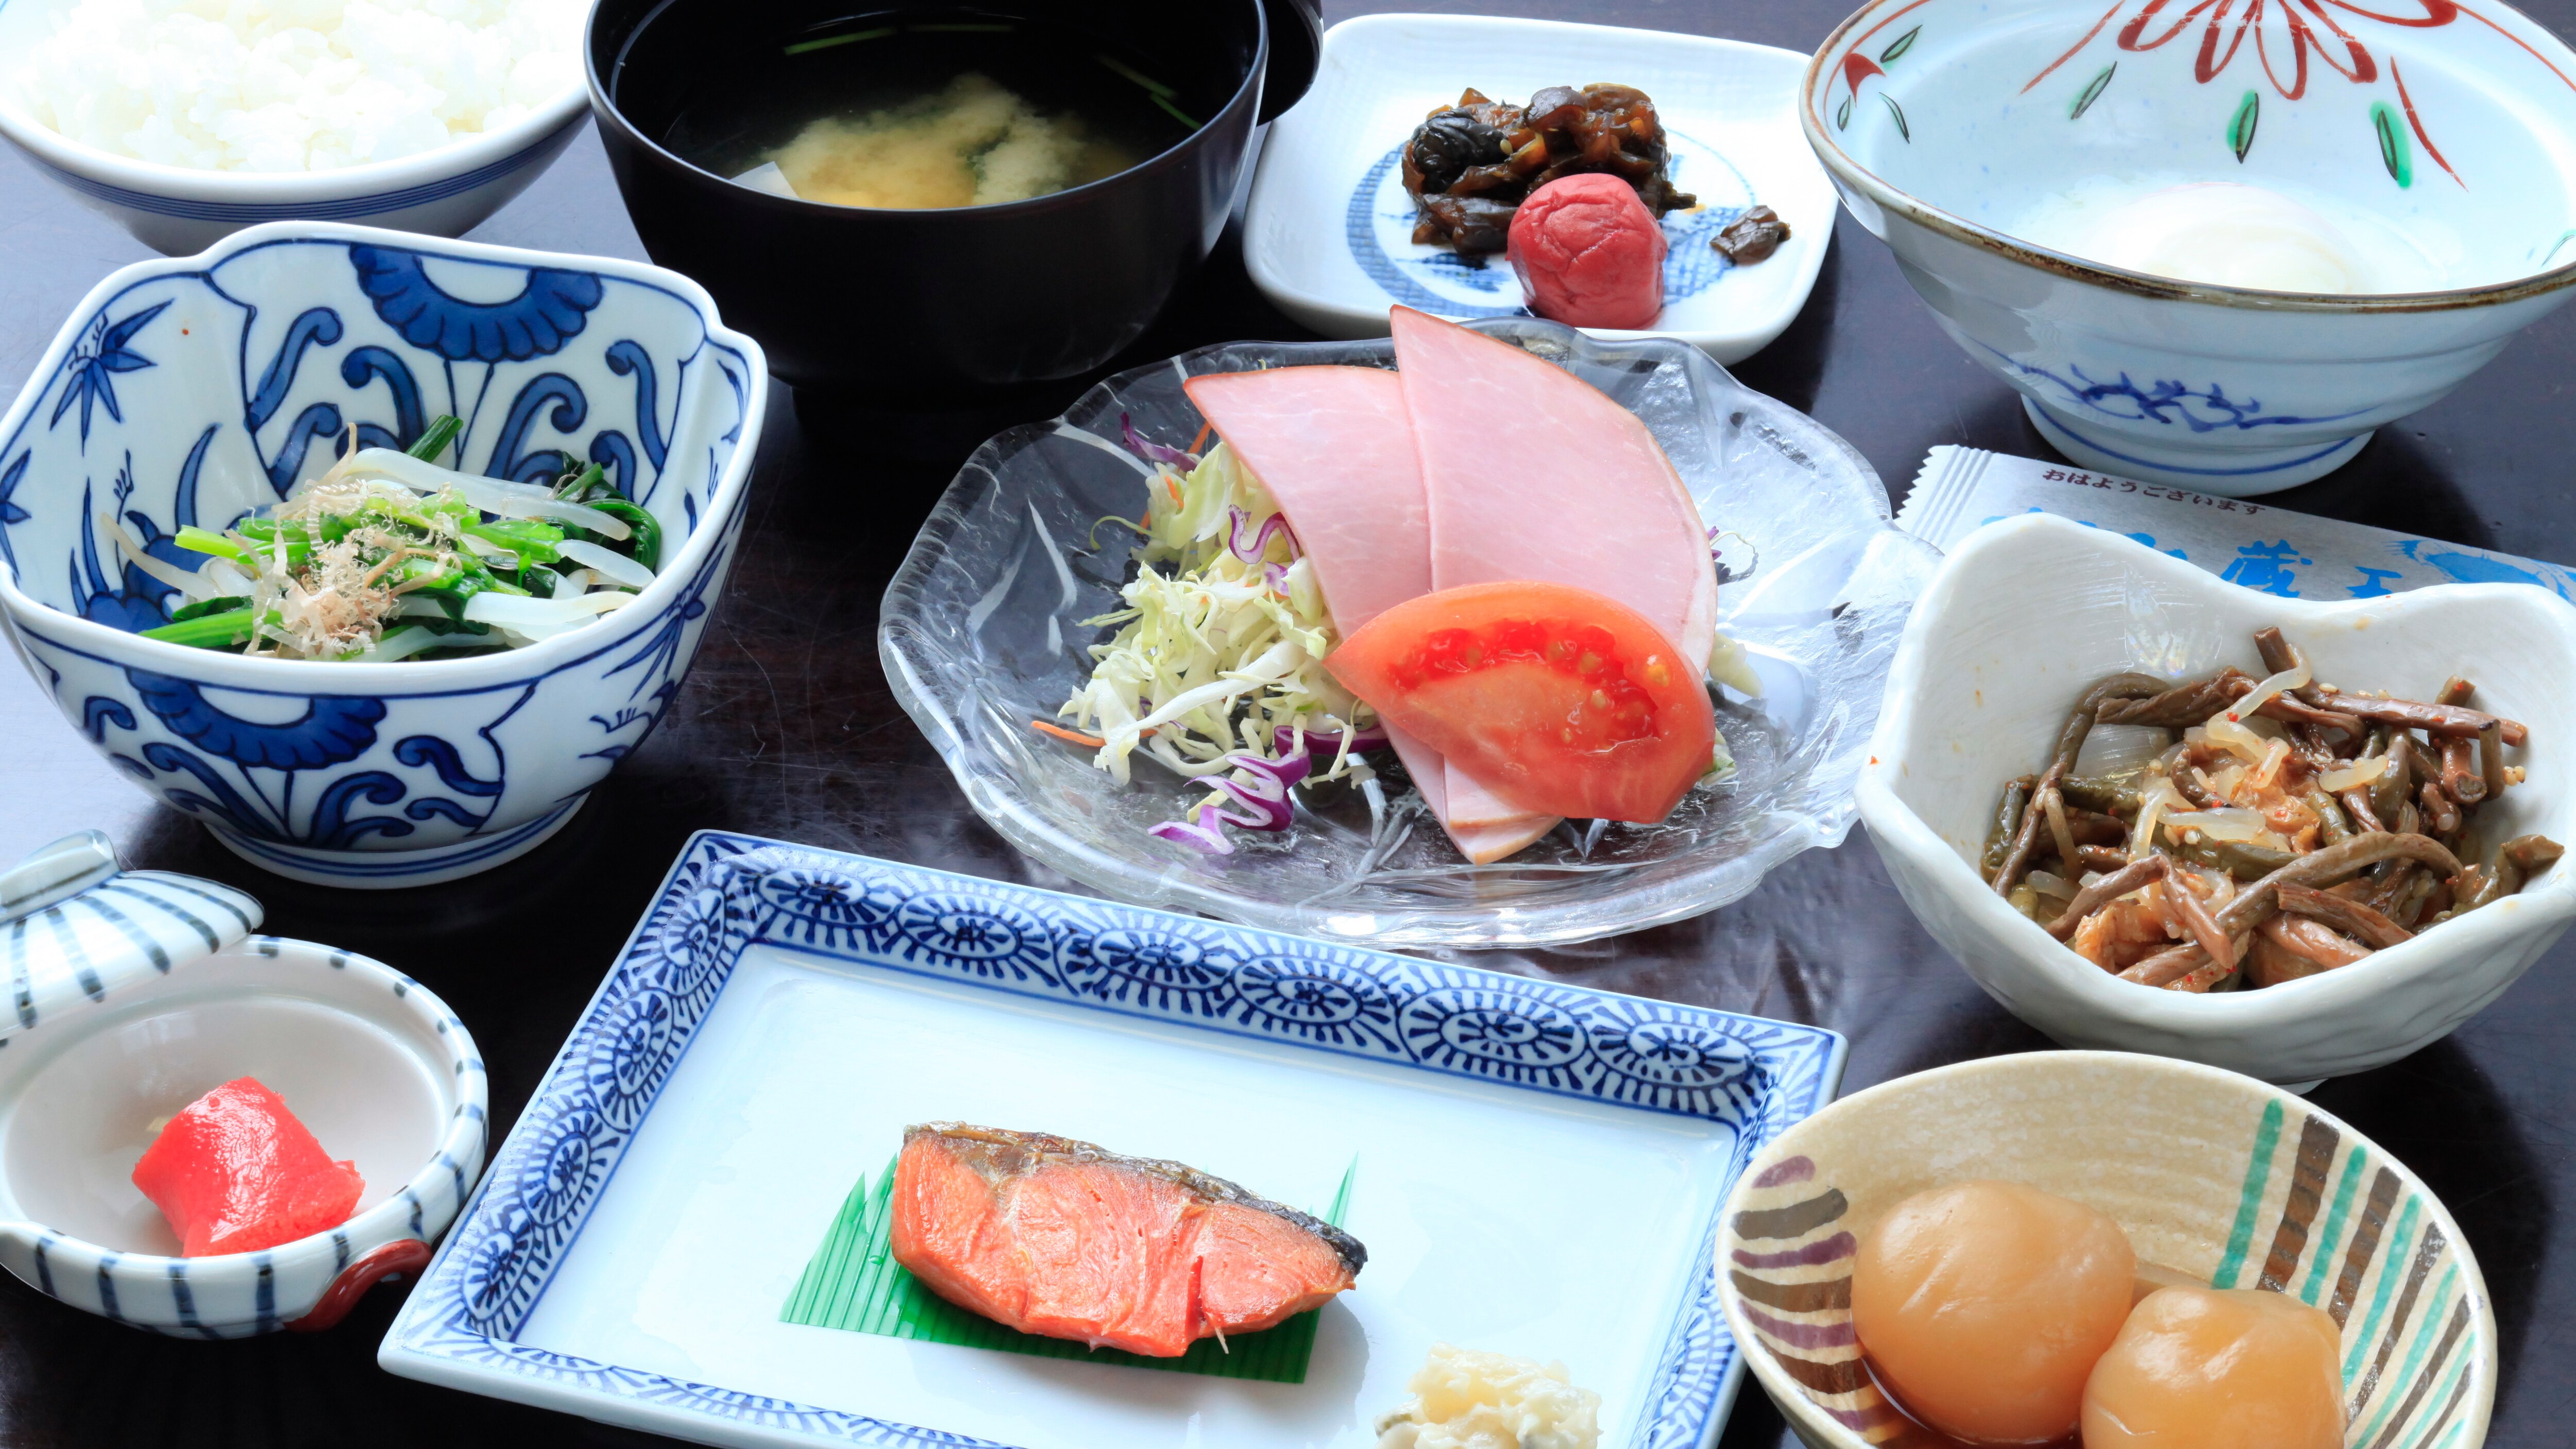 Sarapan / Set makanan Jepang sederhana tanpa dekorasi * Gambar